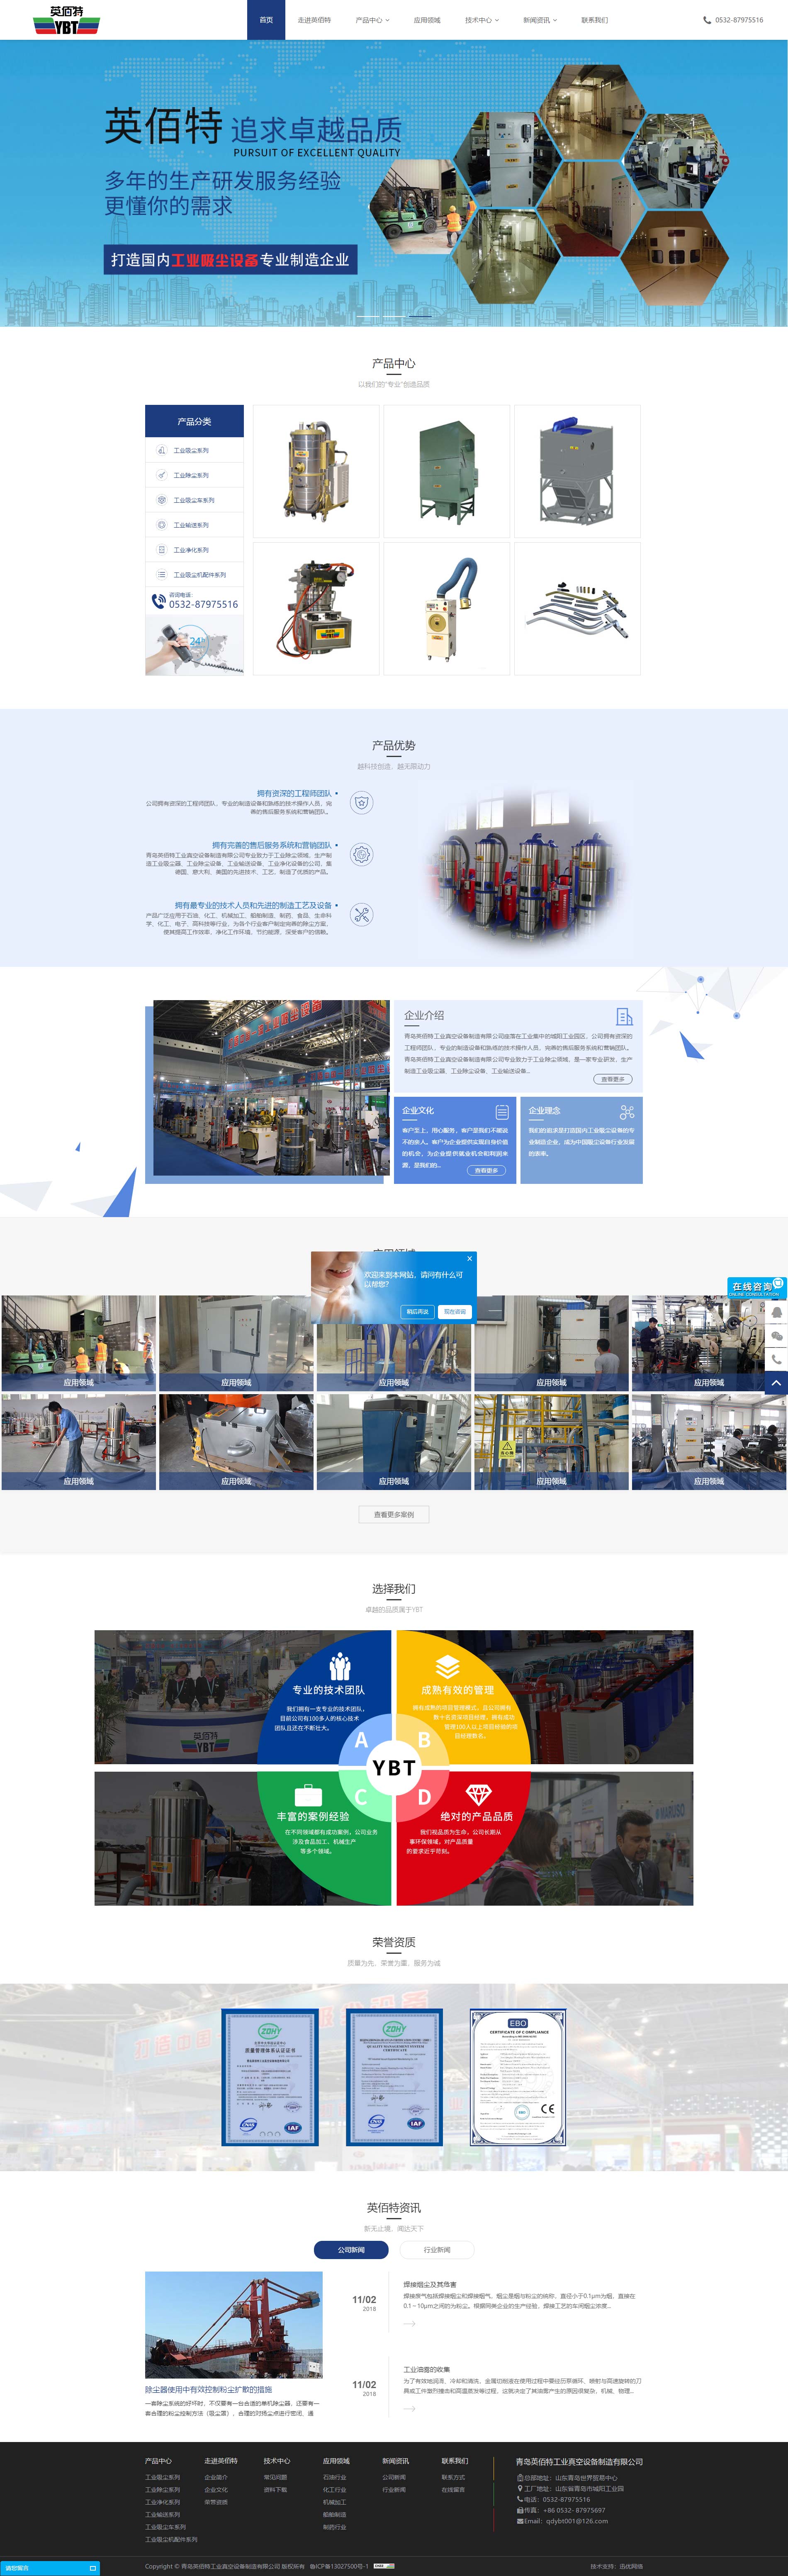 青岛英佰特工业真空设备制造有限公司-主页设计